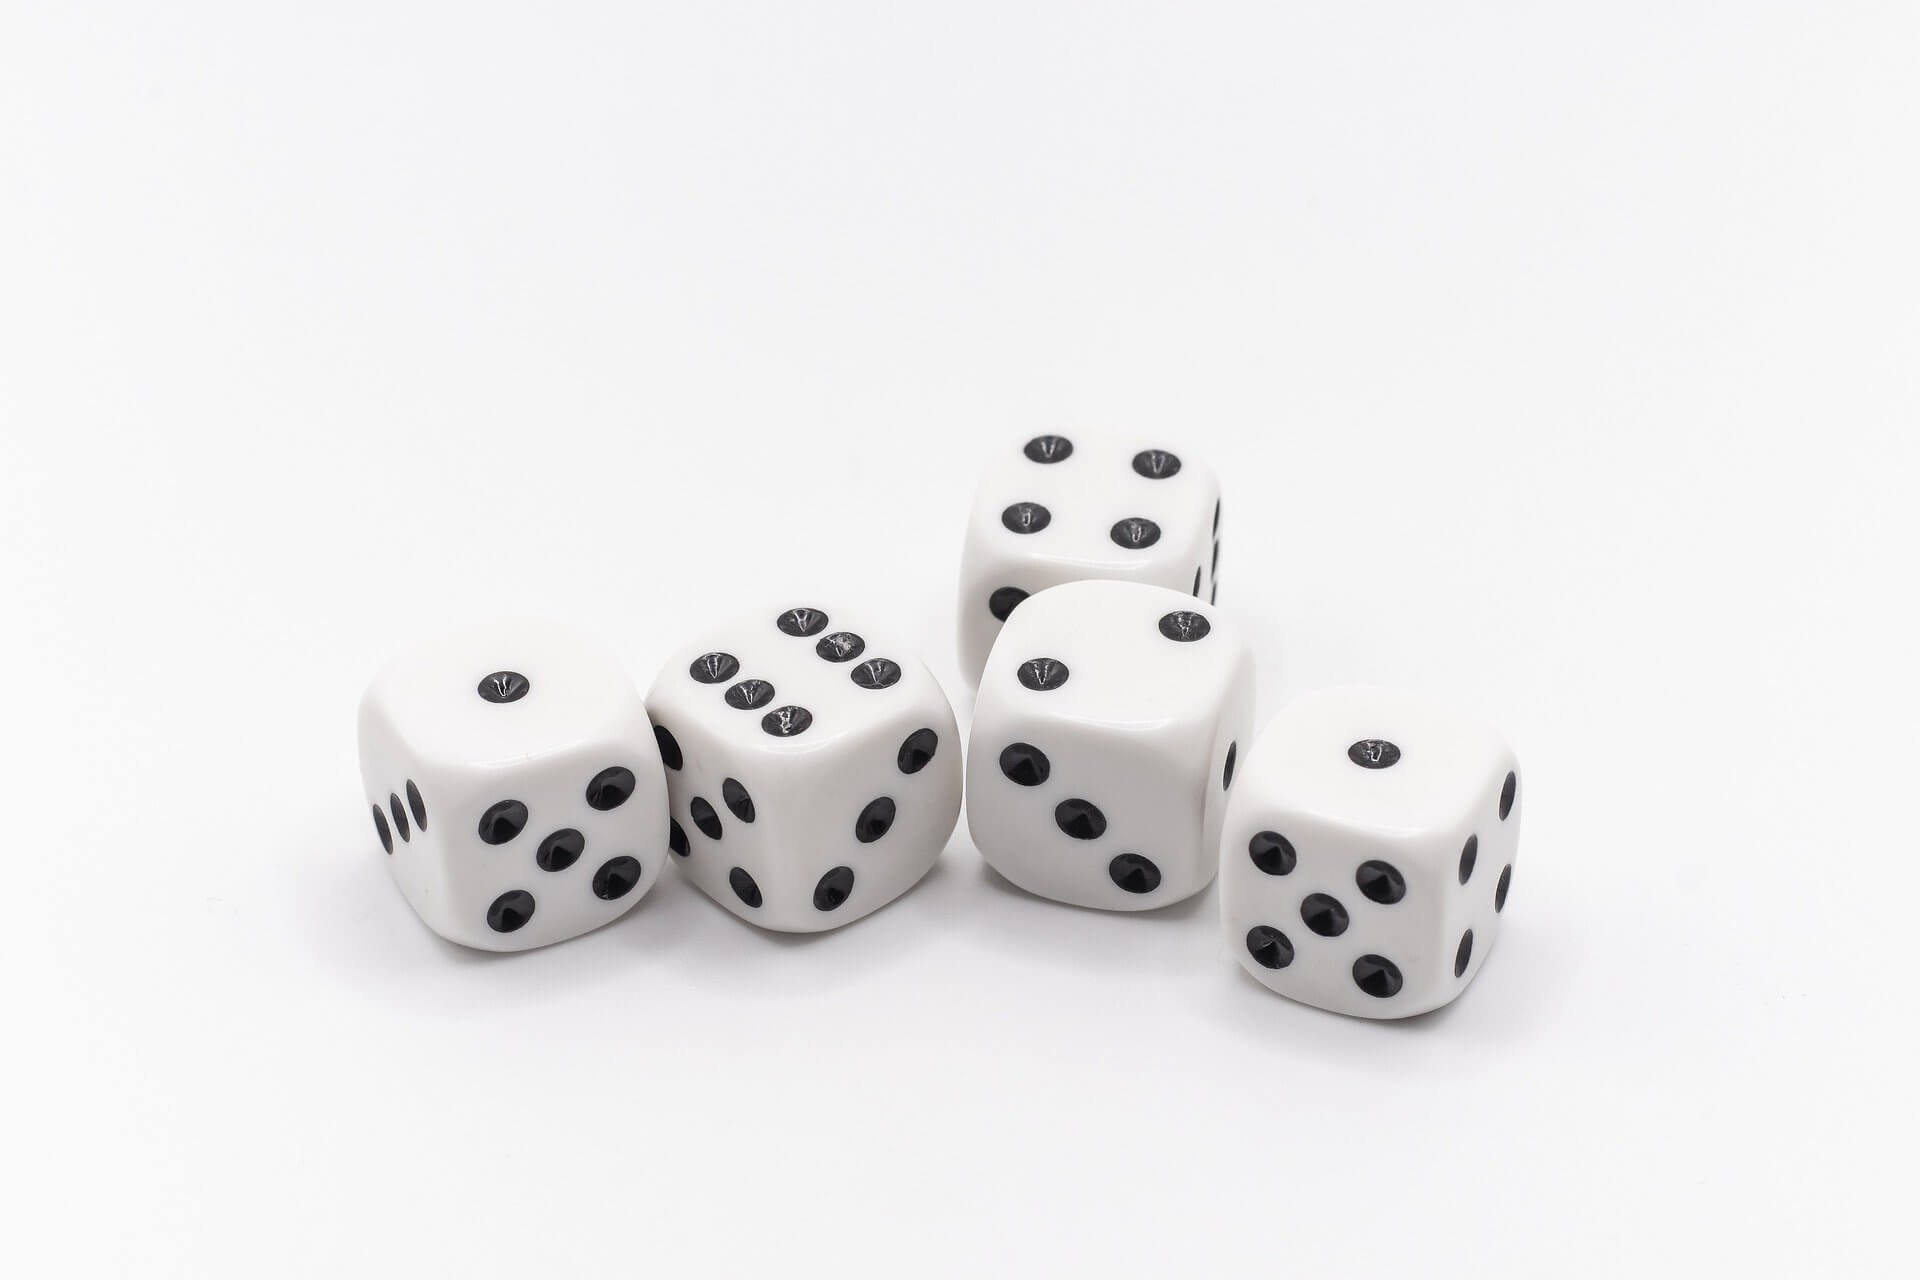 Glücksspiel in Grossbritannien: Problematisches Spielverhalten sinkt